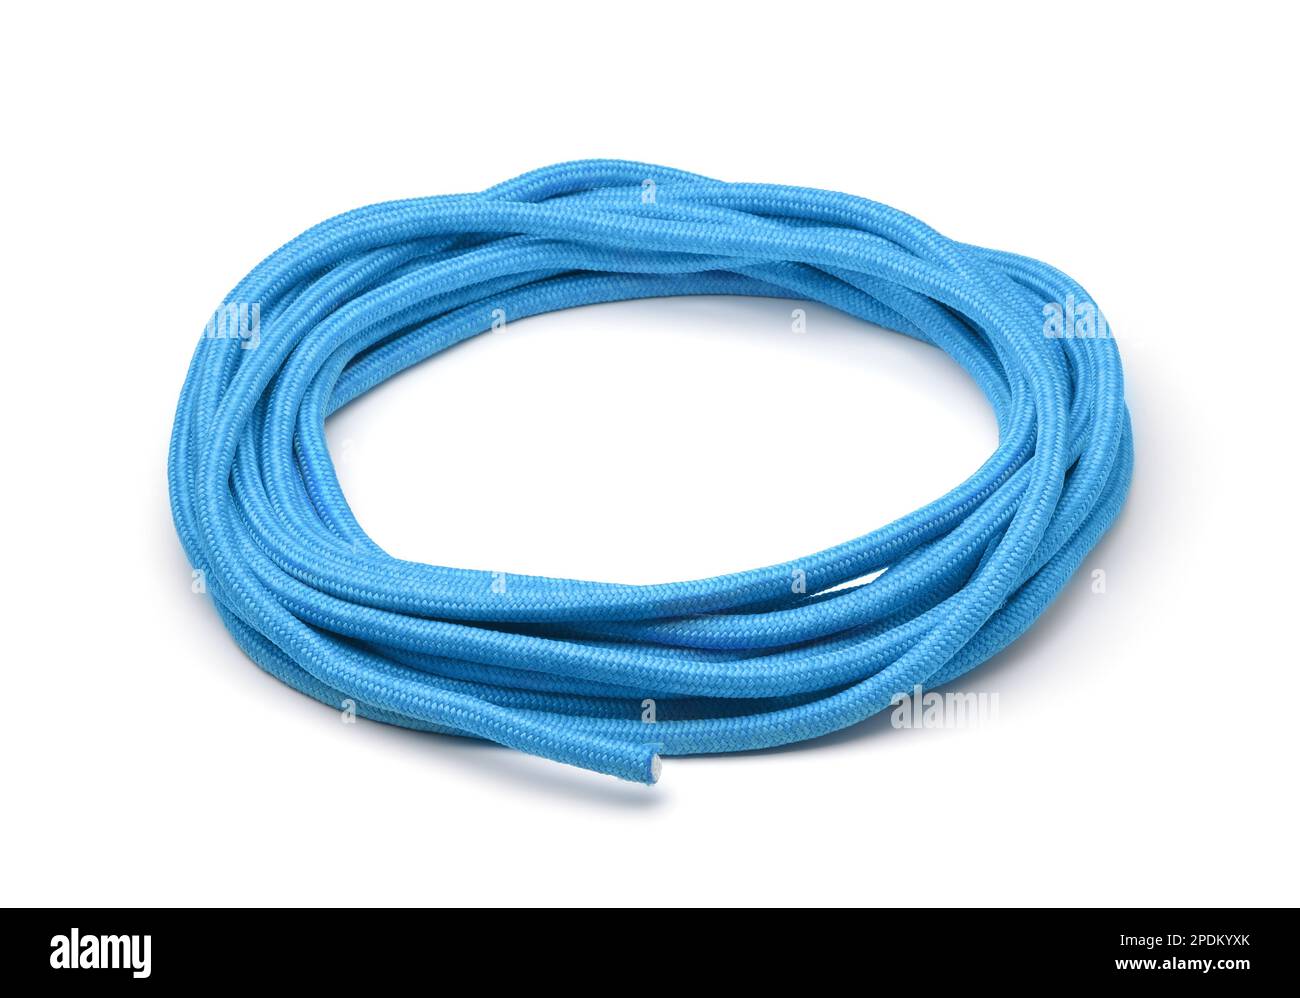 Bobine de corde épaisse et durable bleue isolée sur blanc Banque D'Images